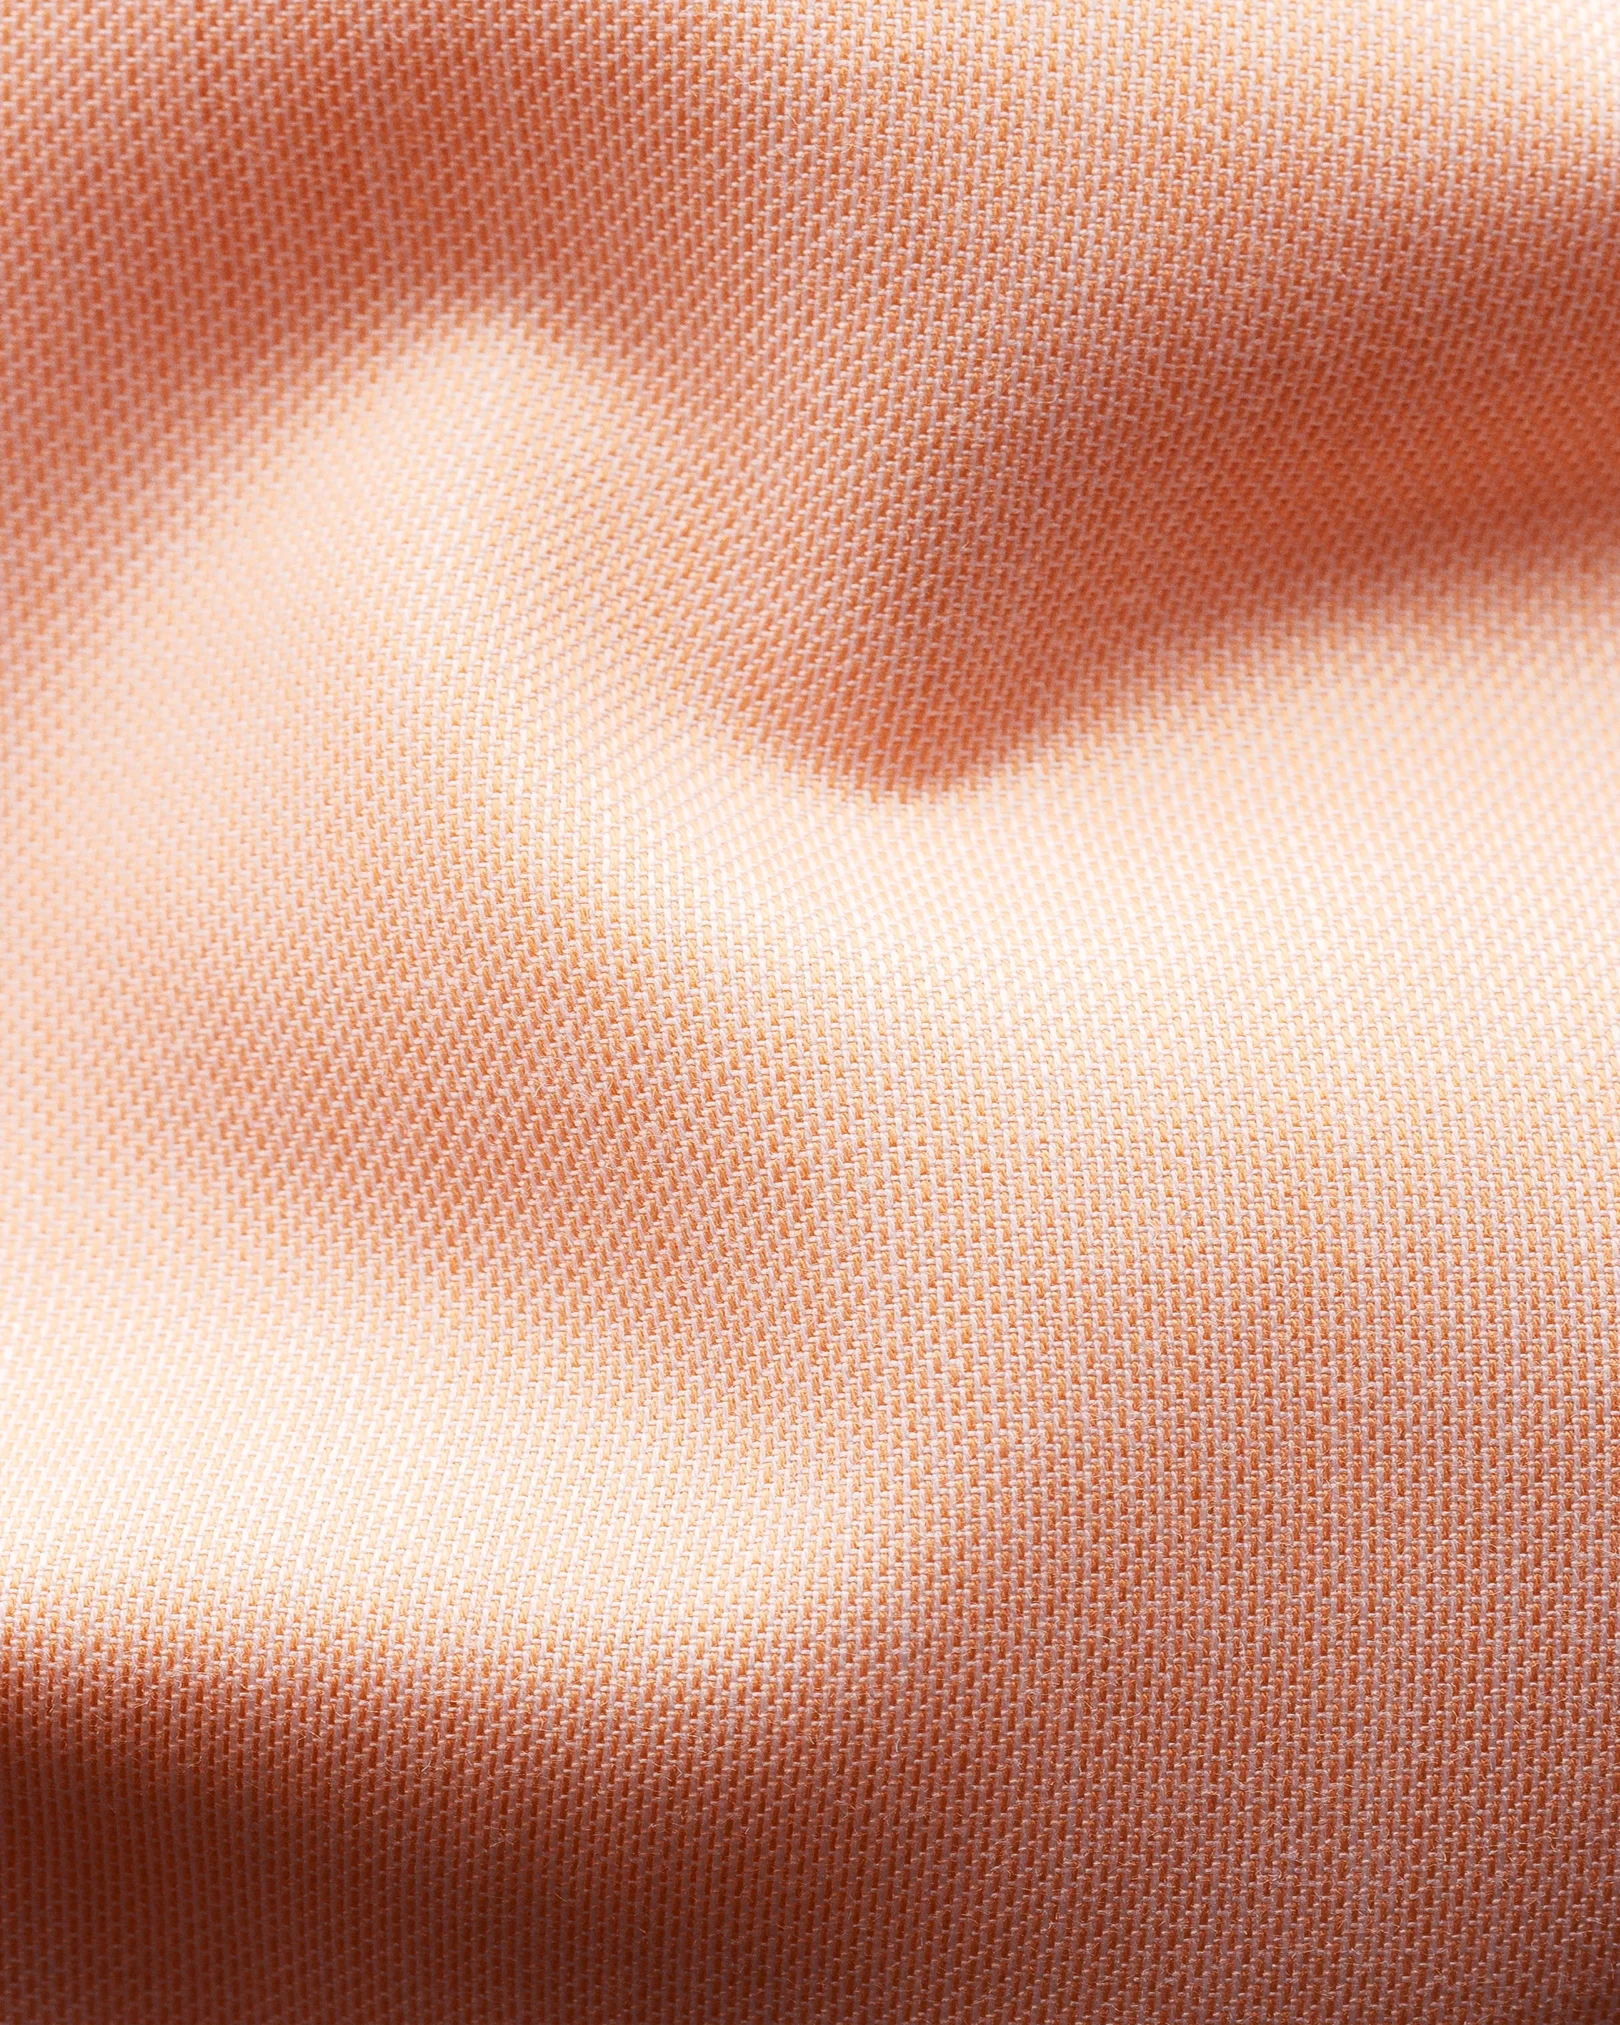 Eton - orange twill shirt navy piping